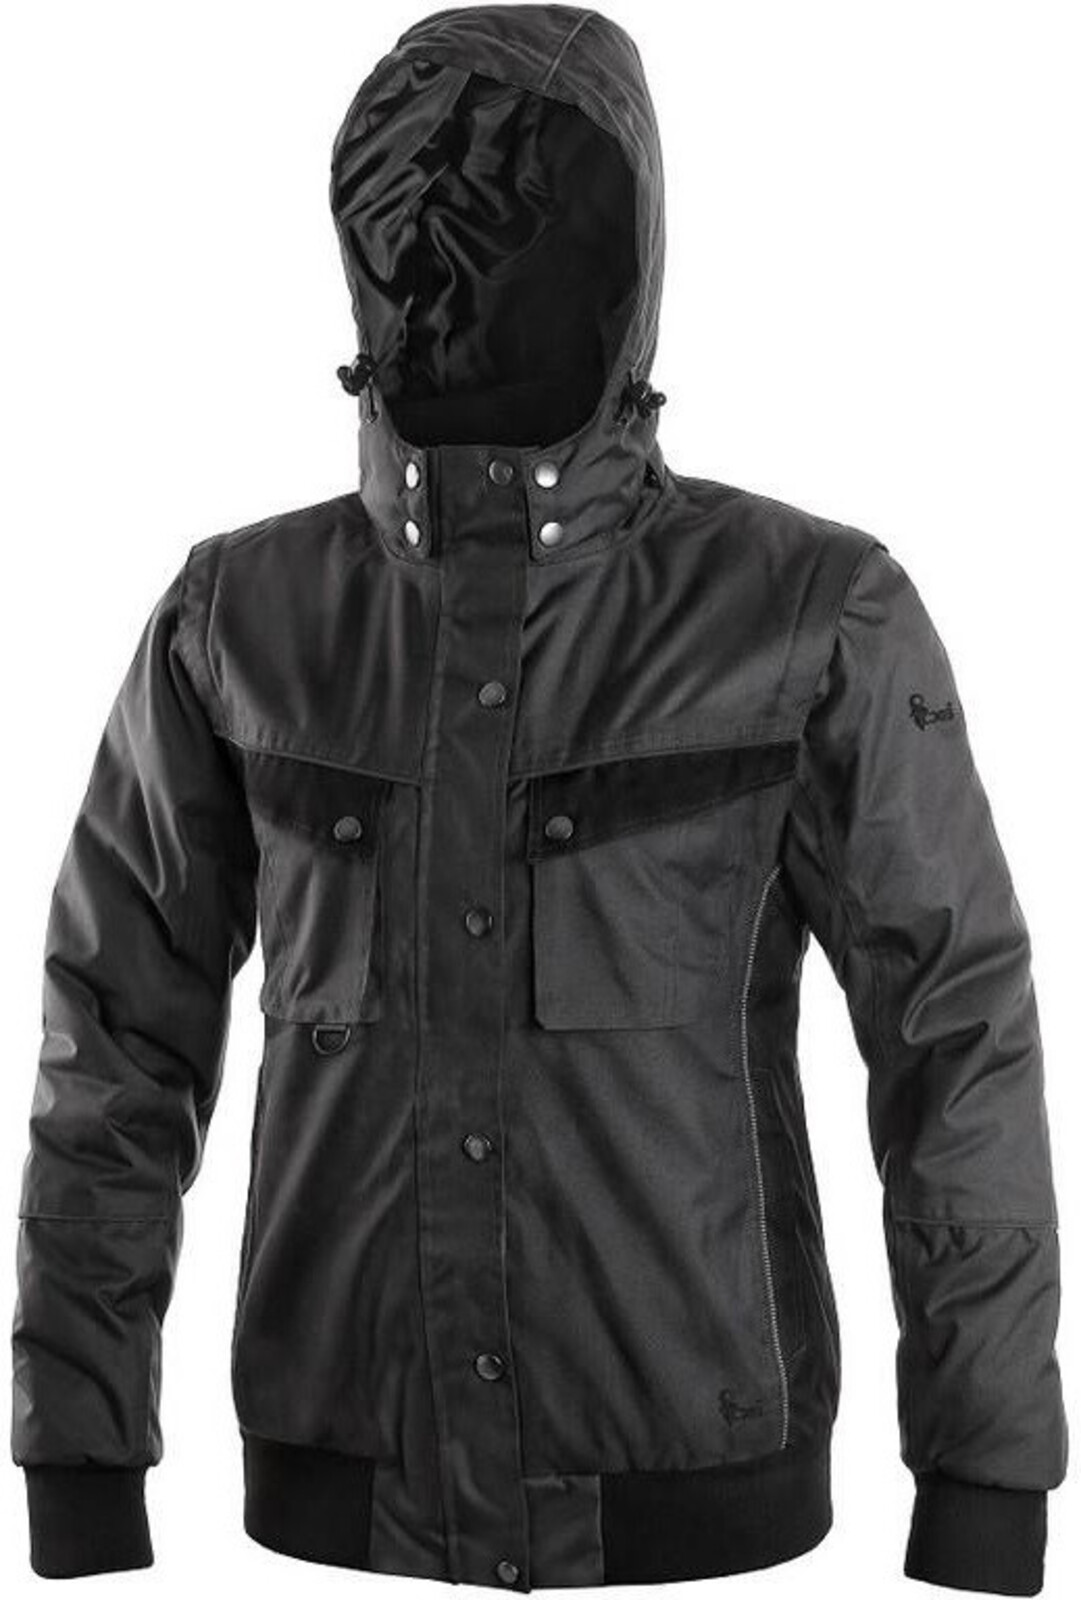 Dámska zimná bunda CXS Irvine 2v1 - veľkosť: XXL, farba: sivá/čierna